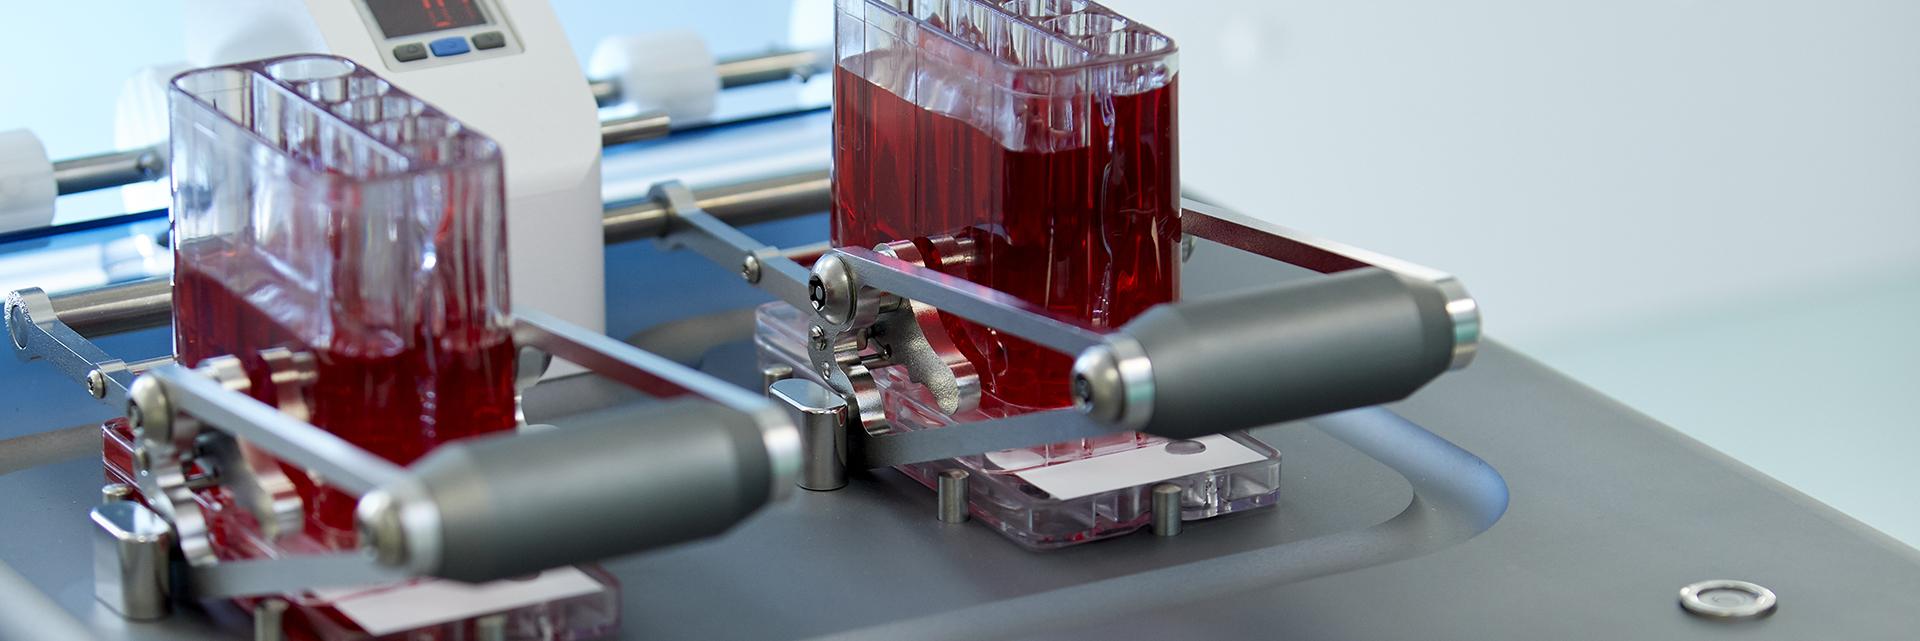 Blutproben in einem Laborgerät